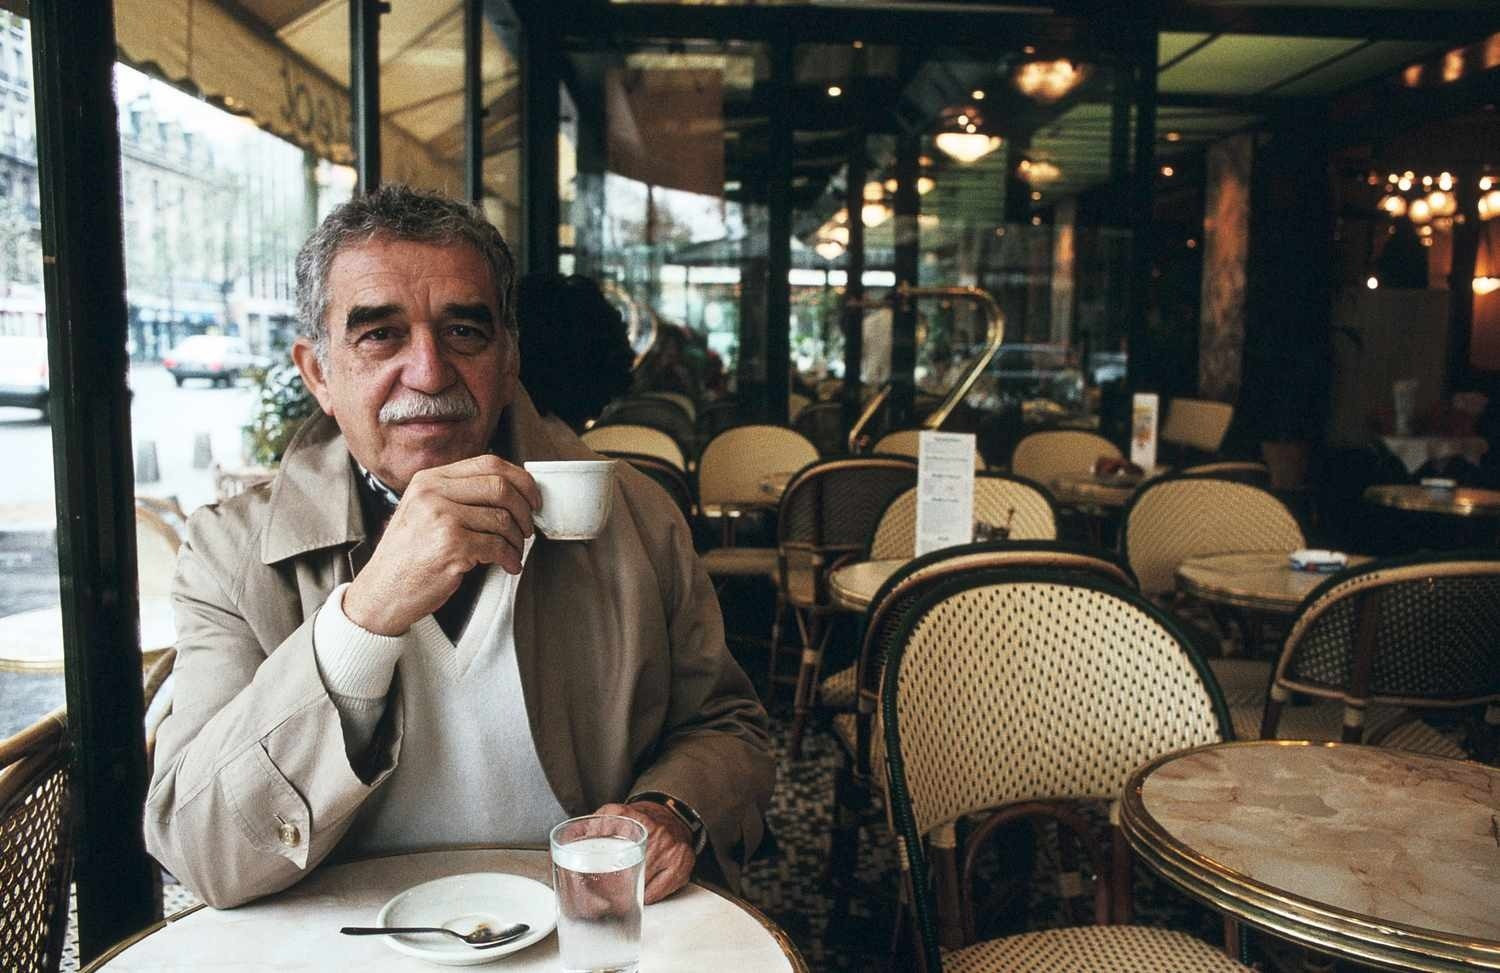 Trăm năm cô đơn cùng Gabriel García Márquez - 2